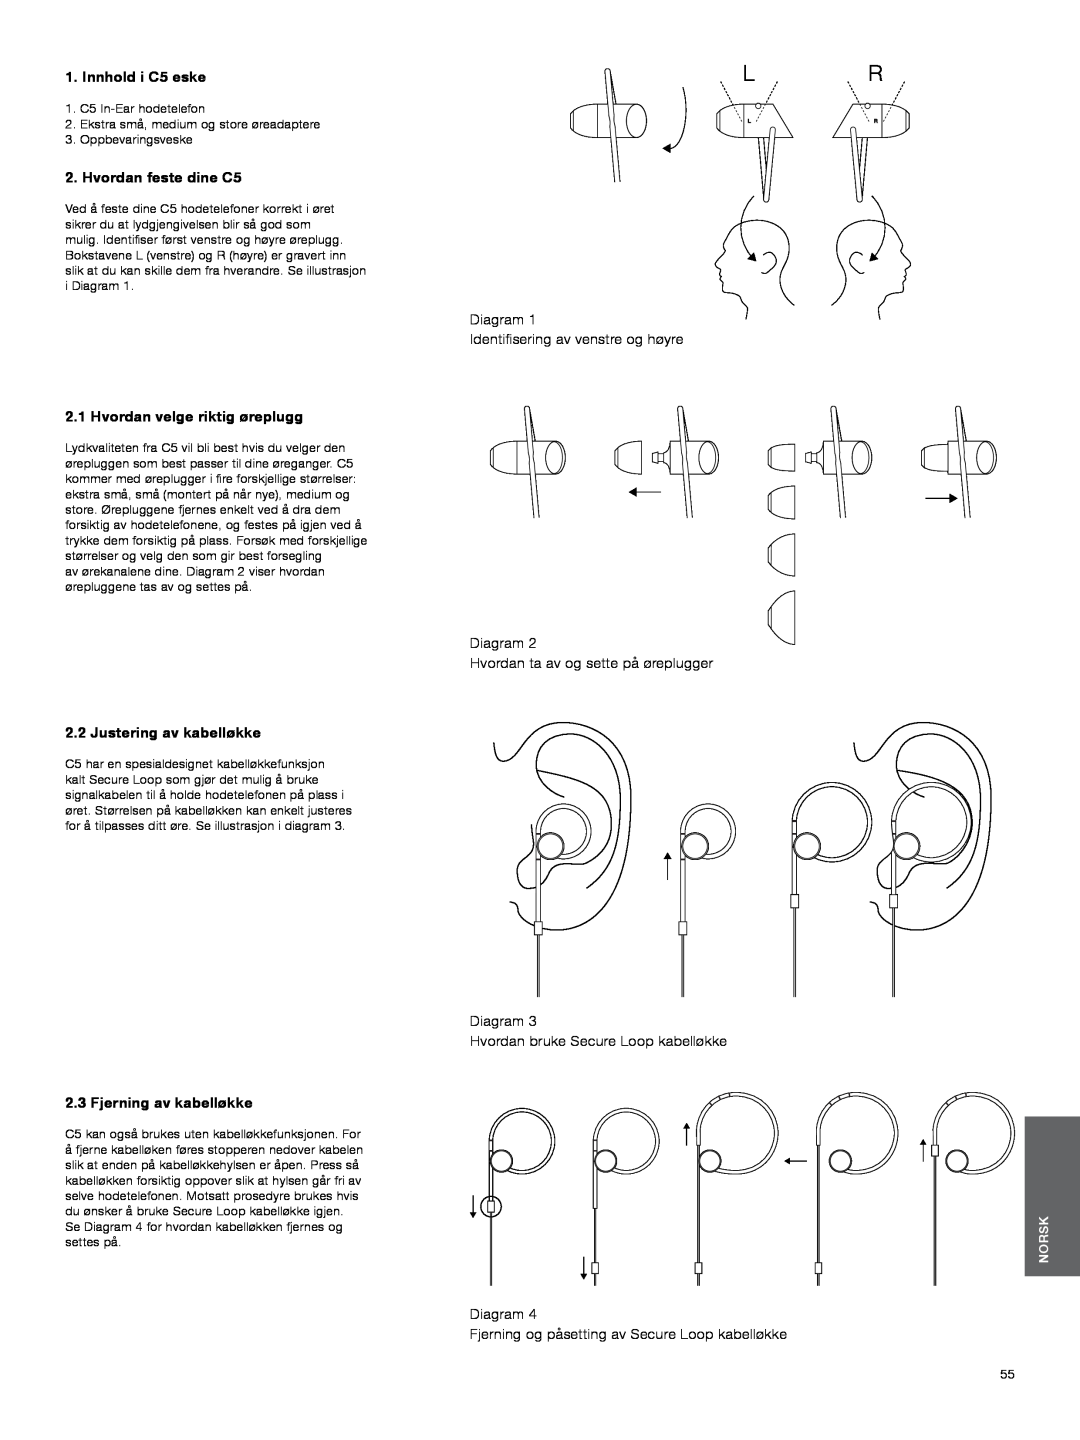 Bowers & Wilkins manual Innhold i C5 eske, Hvordan feste dine C5, Diagram Identifisering av venstre og høyre, Norsk 